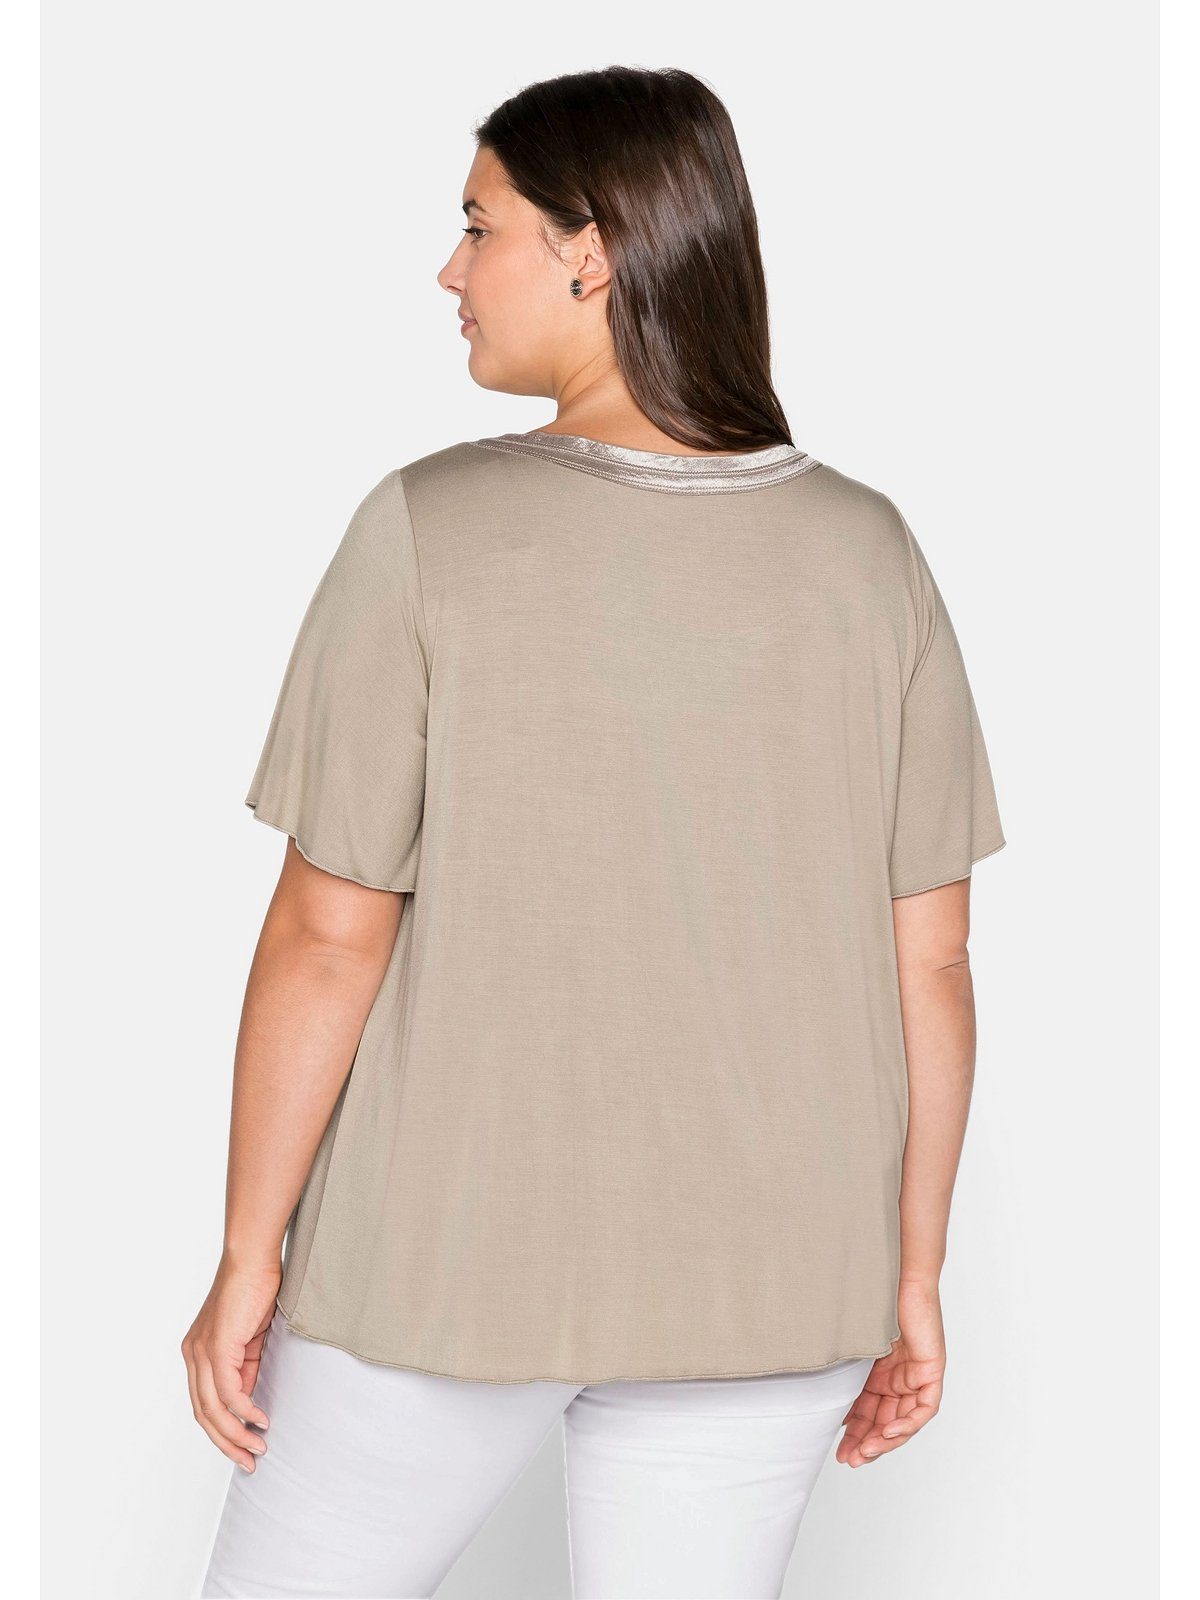 Sheego T-Shirt Große mit Blende Größen in dekorativer A-Linie